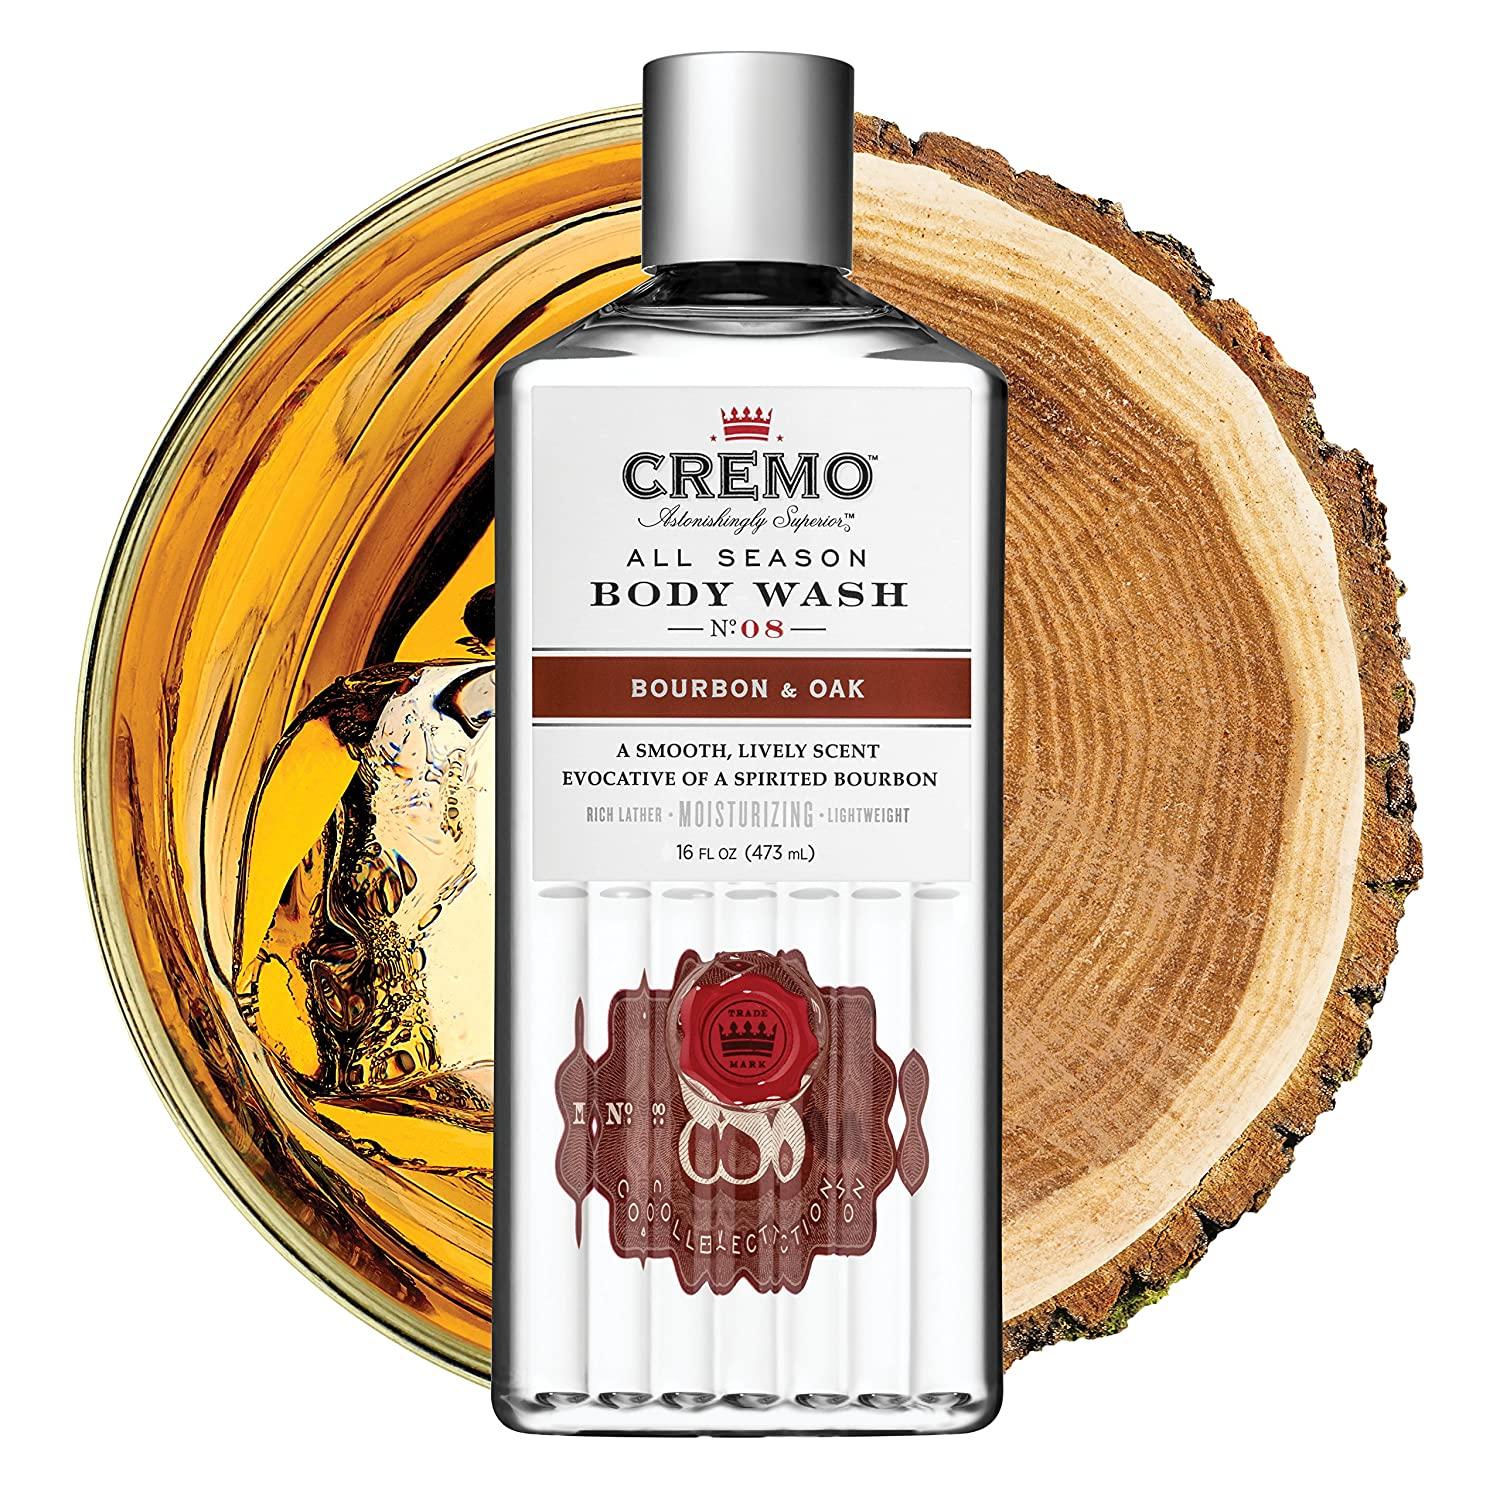 Cremo Body Wash, All Season, Bourbon & Oak, No. 08 - 16 fl oz